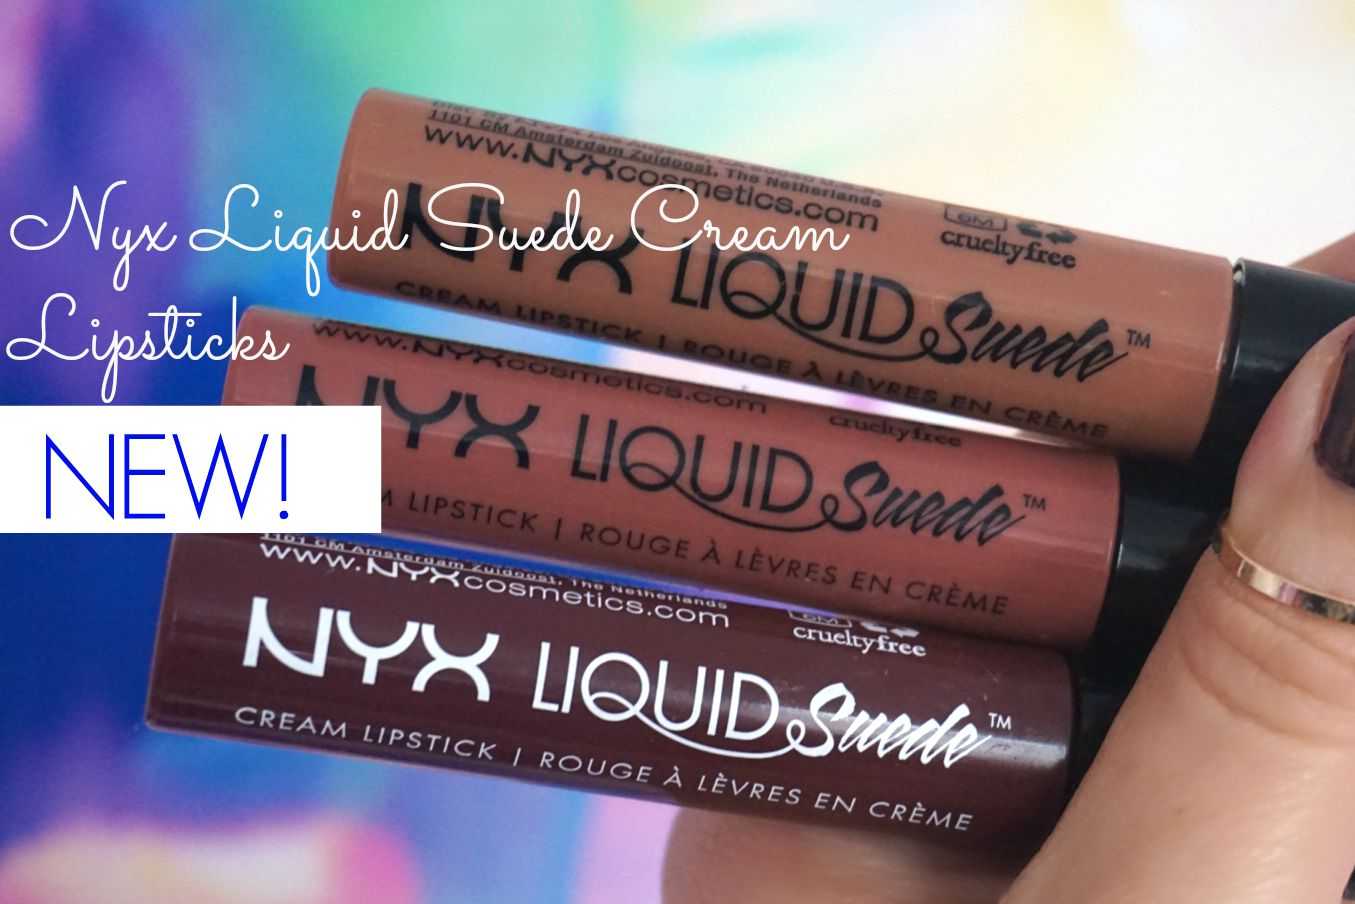 NYX Liquid Suede Cream - короткий но максимально информативный обзор Для большего удобства добавлены характеристики отзывы и видео